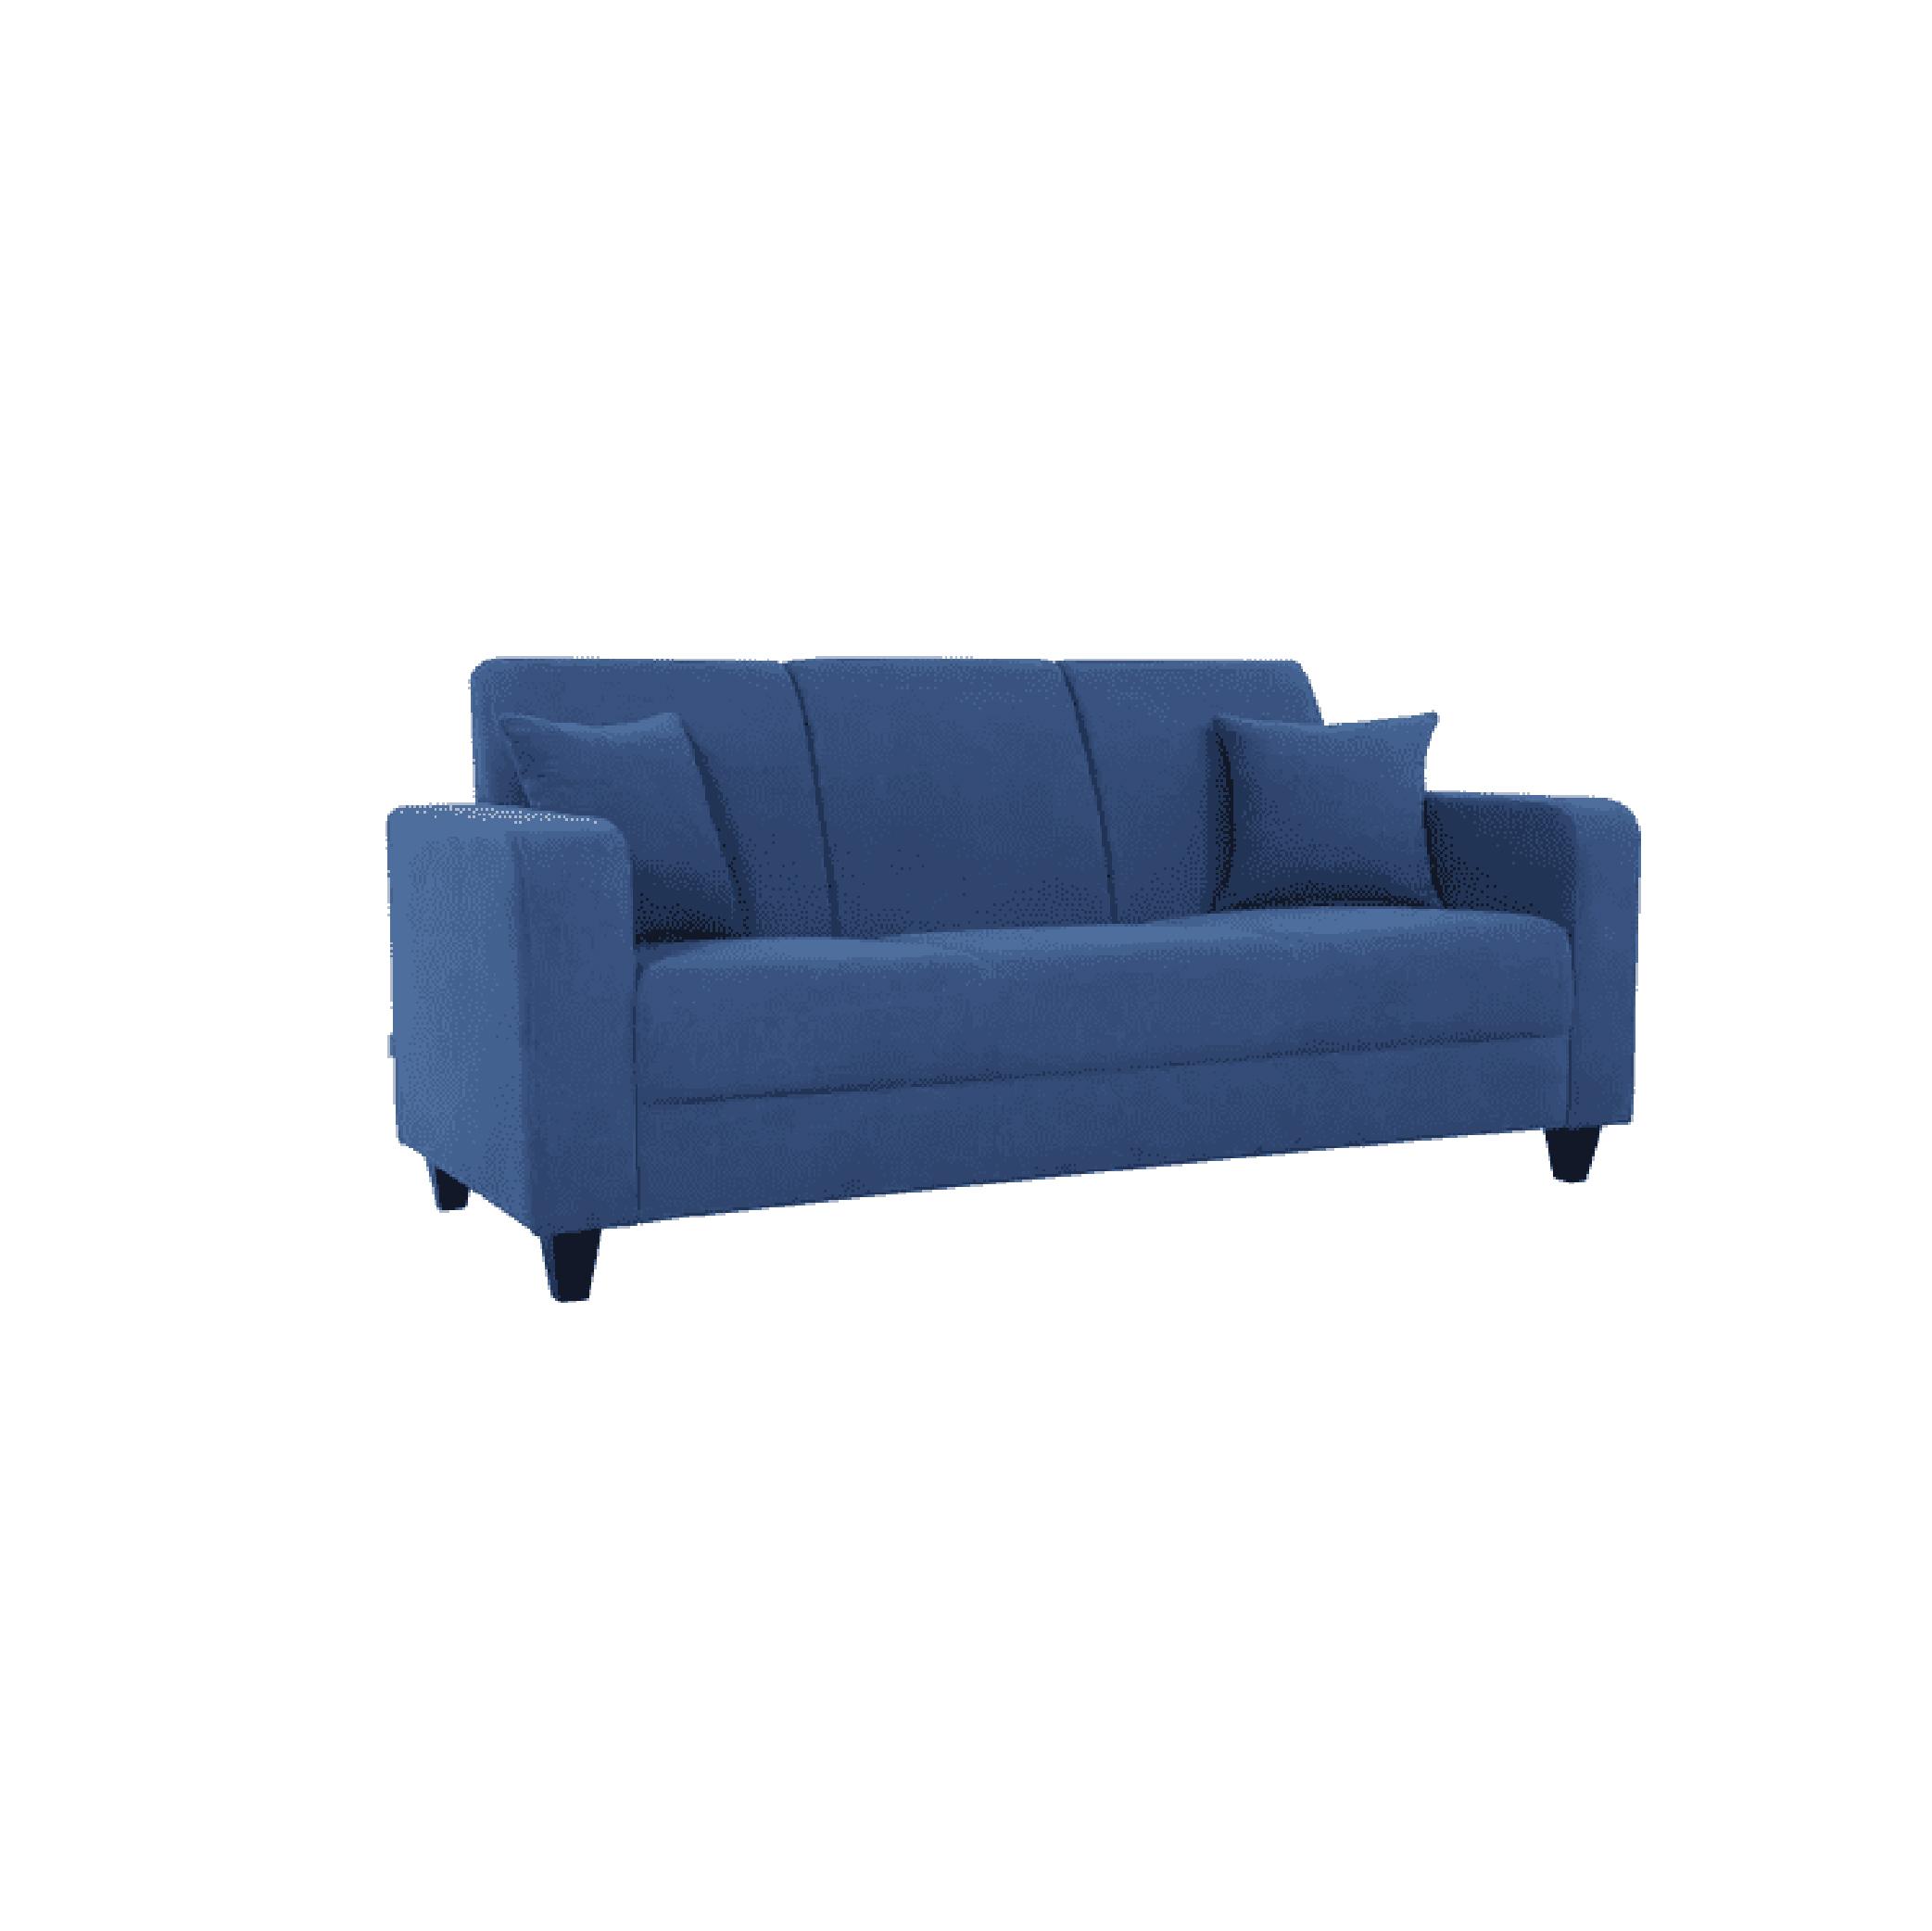 Naples Three Seater Sofa in Denim Blue Colour